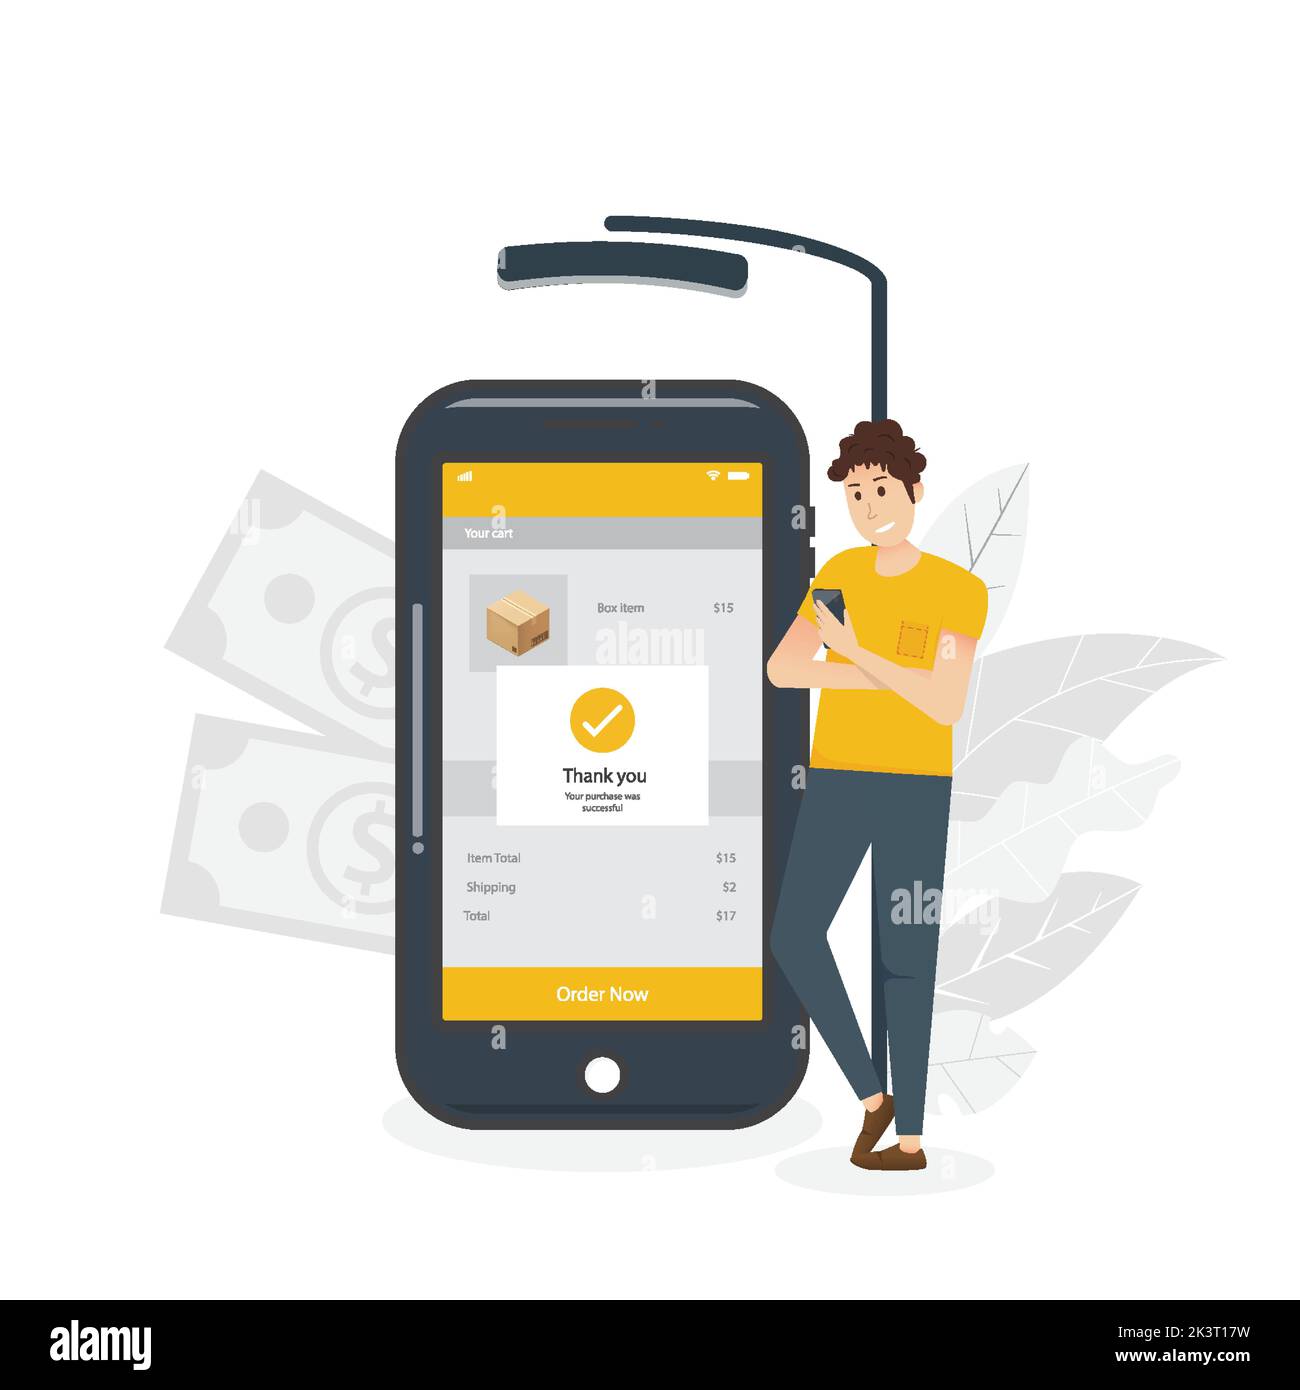 Online-Zahlungskonzept. Mann hält Smartphone-Shopping auf dem Smartphone auf dem Bildschirm. Einkäufe im Internet, wobei das Mobiltelefon bezahlt wird. Cartoon Flach. Stock Vektor